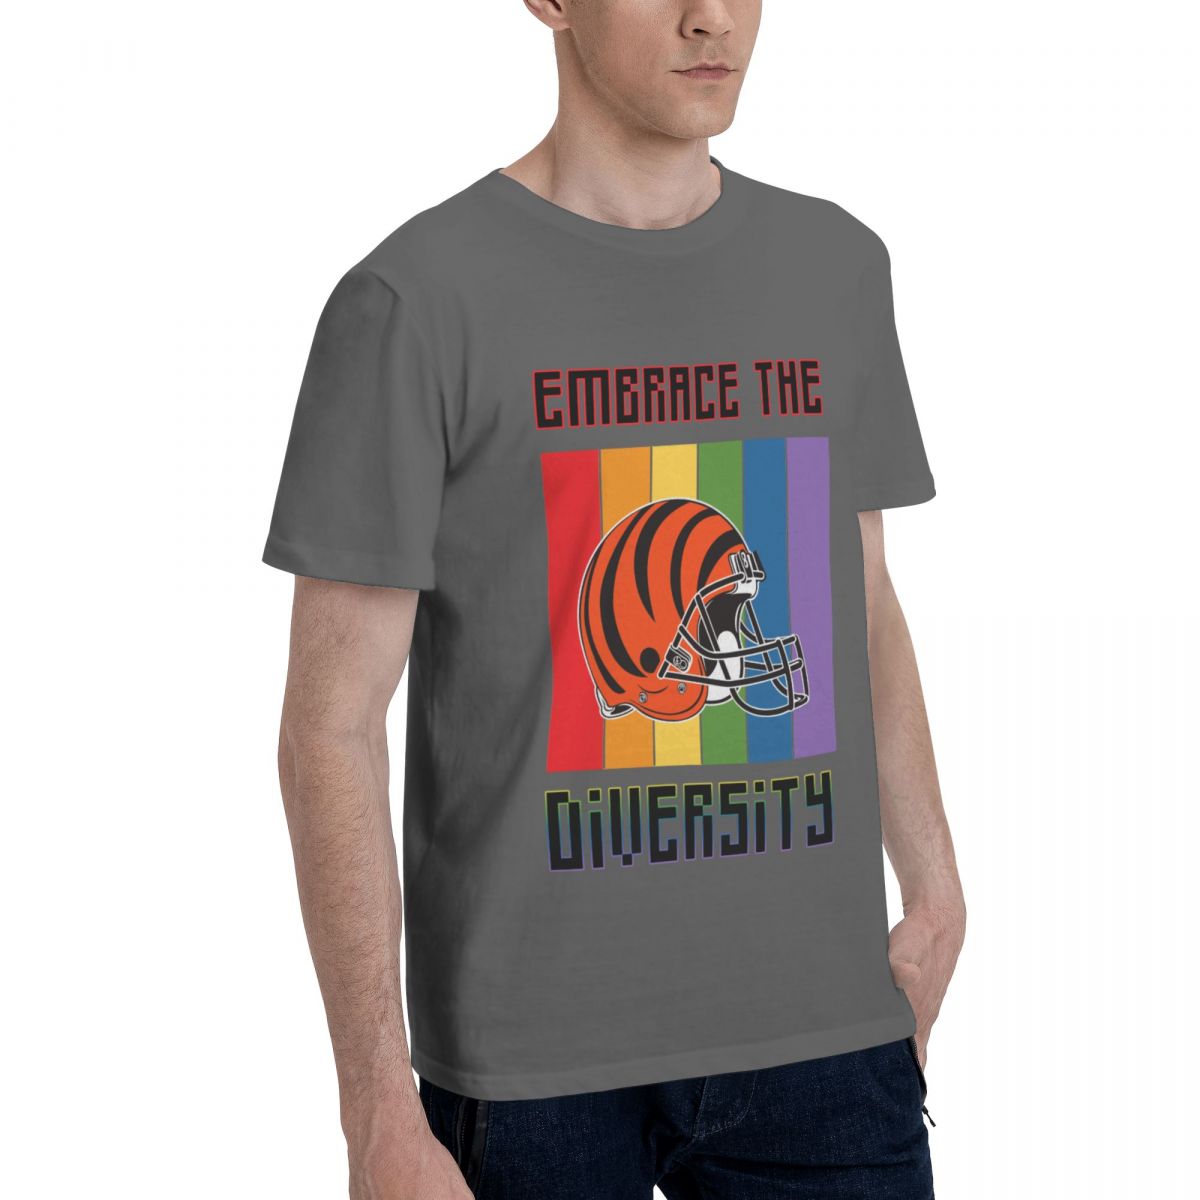 Cincinnati Bengals Embrace The Diversity Printed Men's Cotton T-Shirt